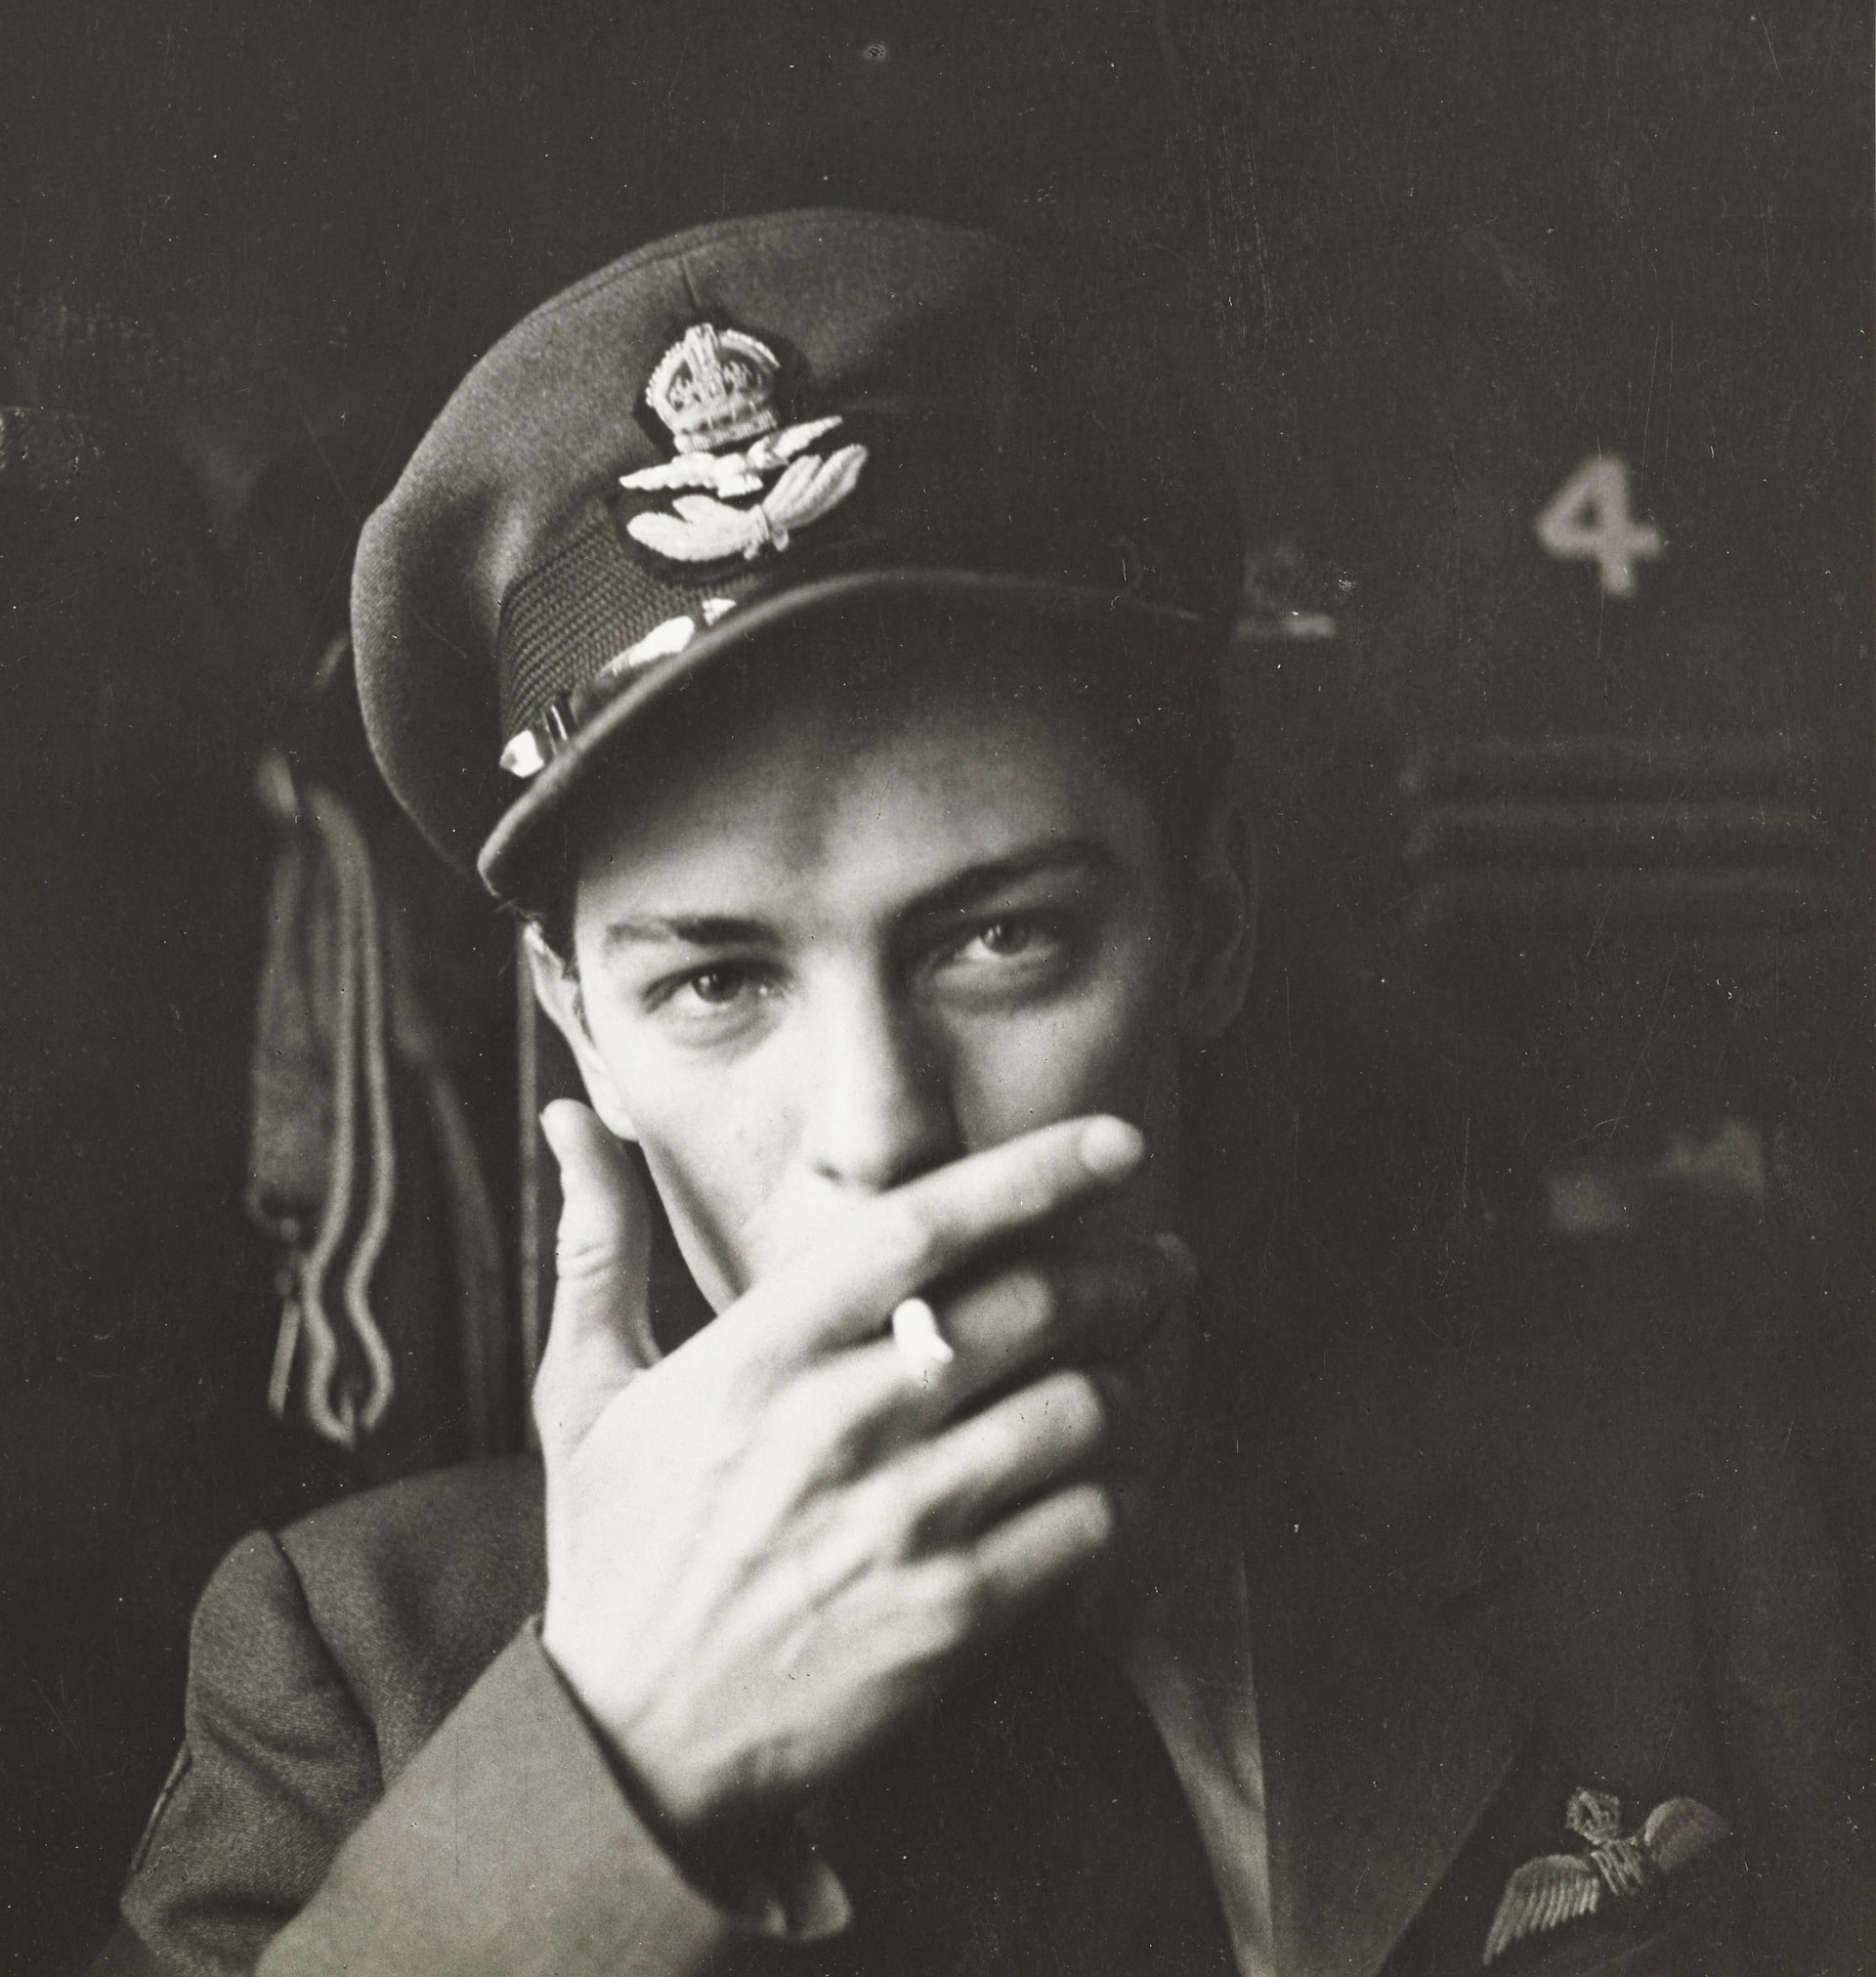 Cecil Beaton, L'ufficiale pilota Daley degli American Eagles, 1942, Vogue © Condé Nast